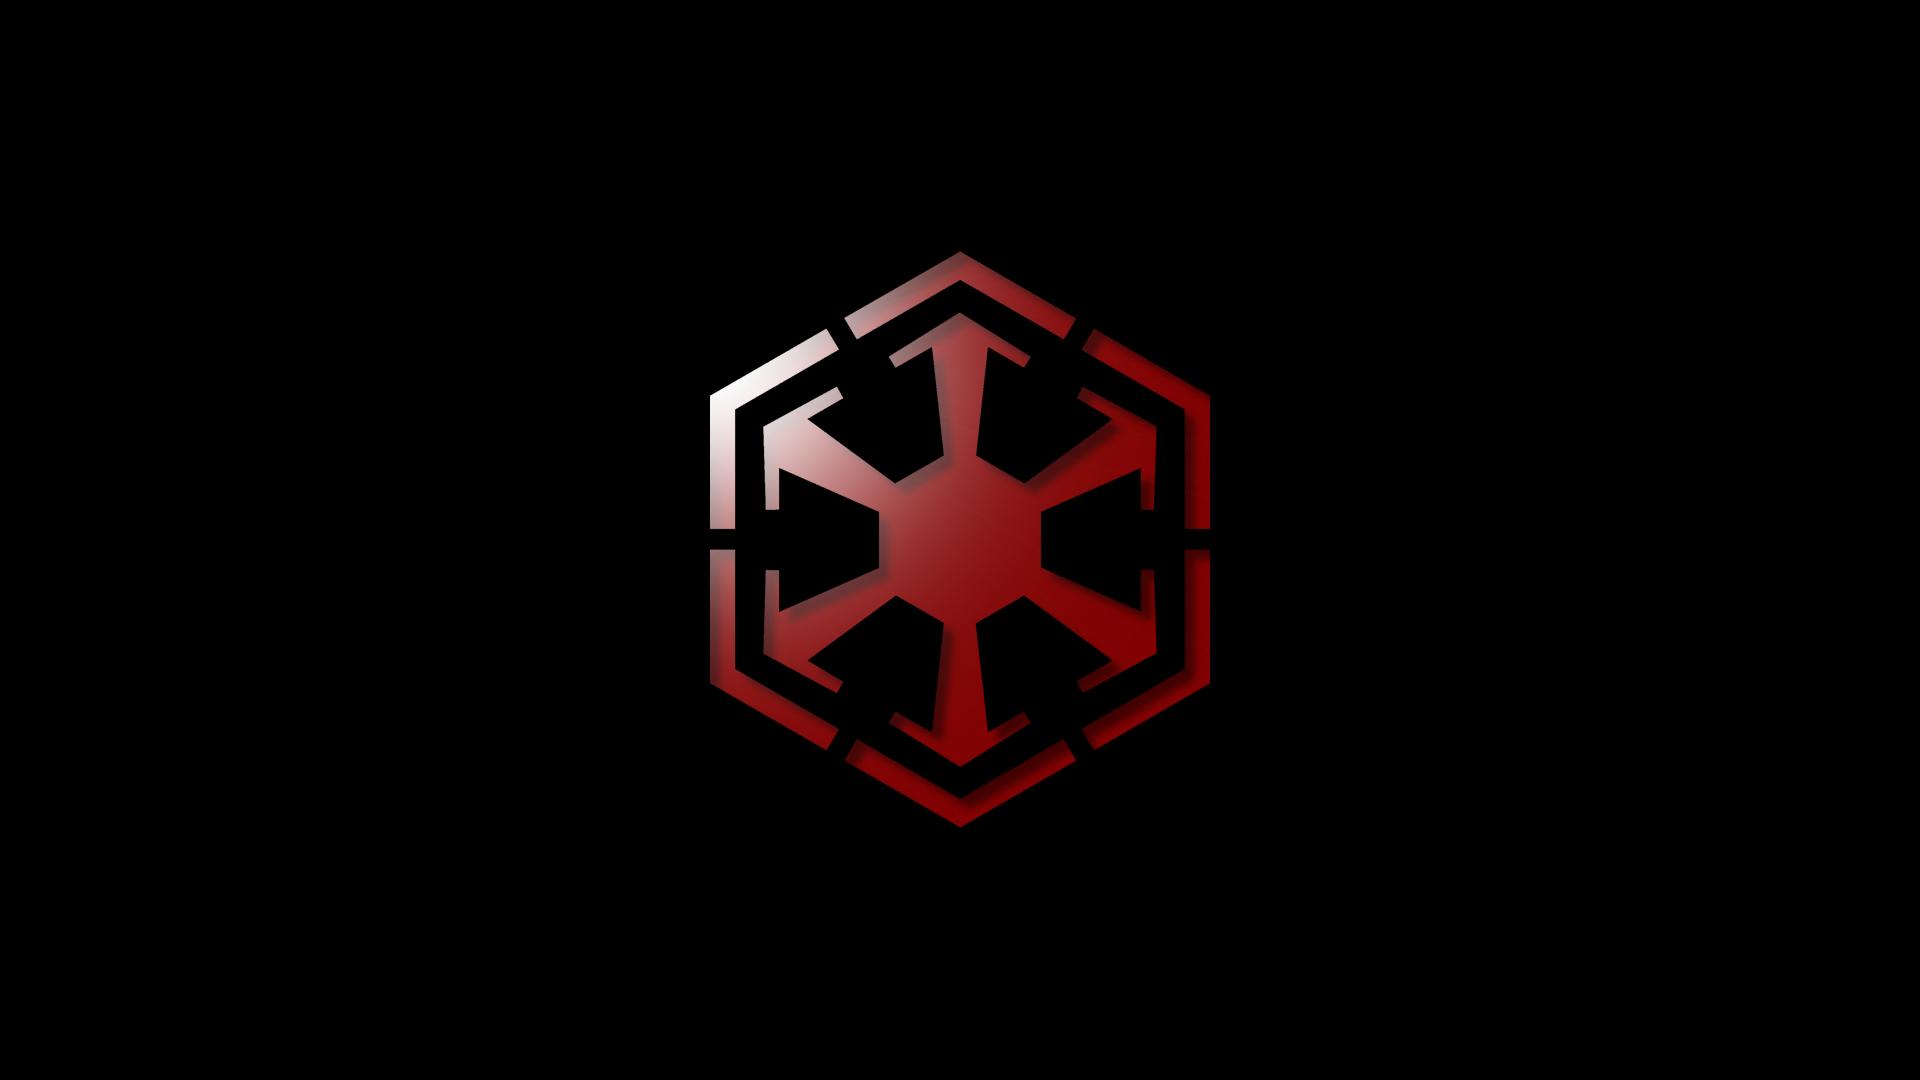 Sith Empire Wallpaper